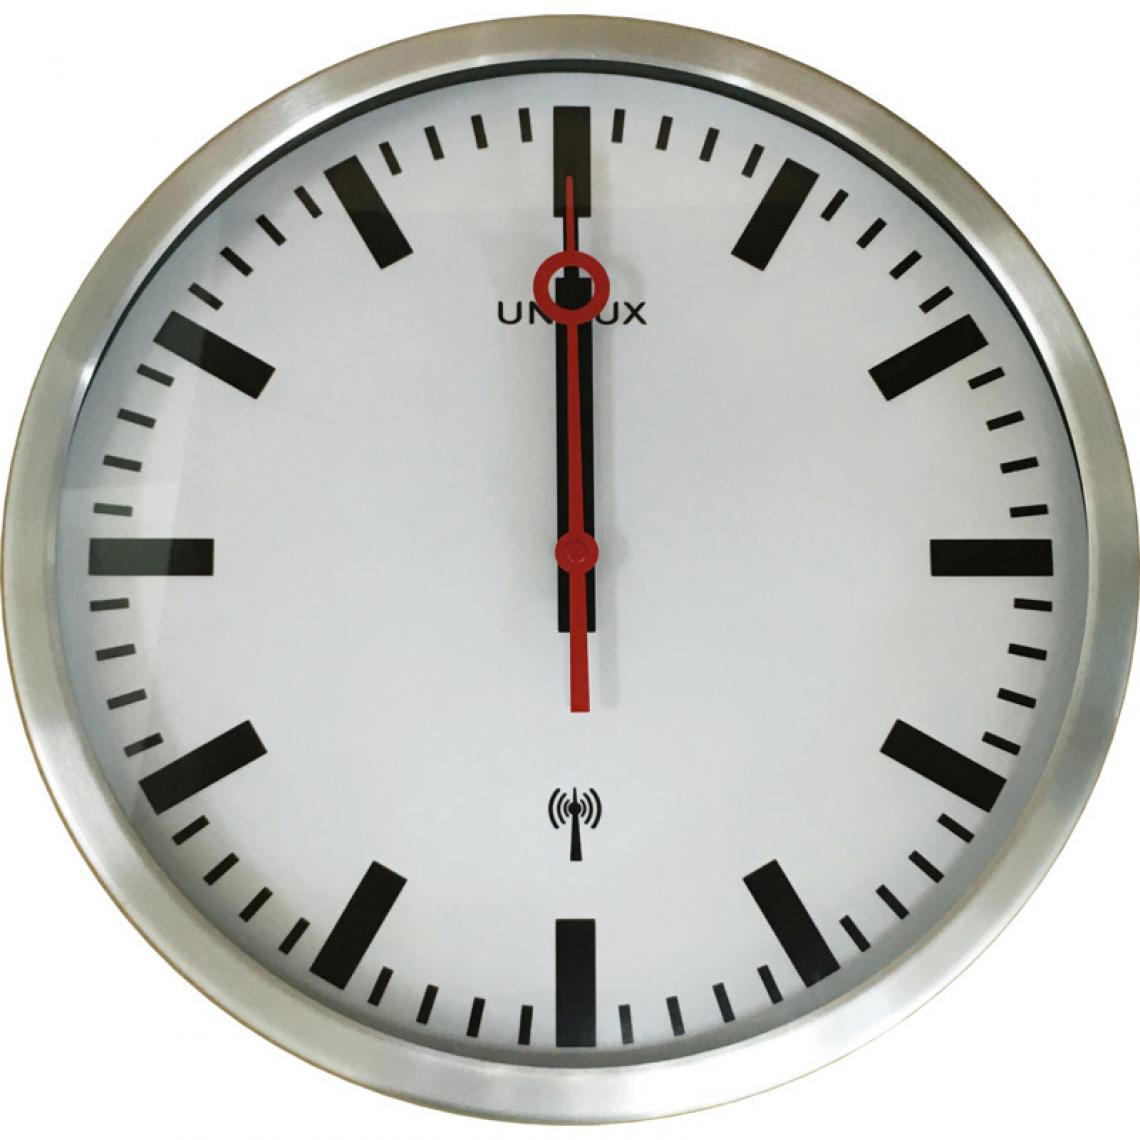 Unilux - UNiLUX Horloge murale/horloge radio pilotée STATION, argent () - Télérupteurs, minuteries et horloges